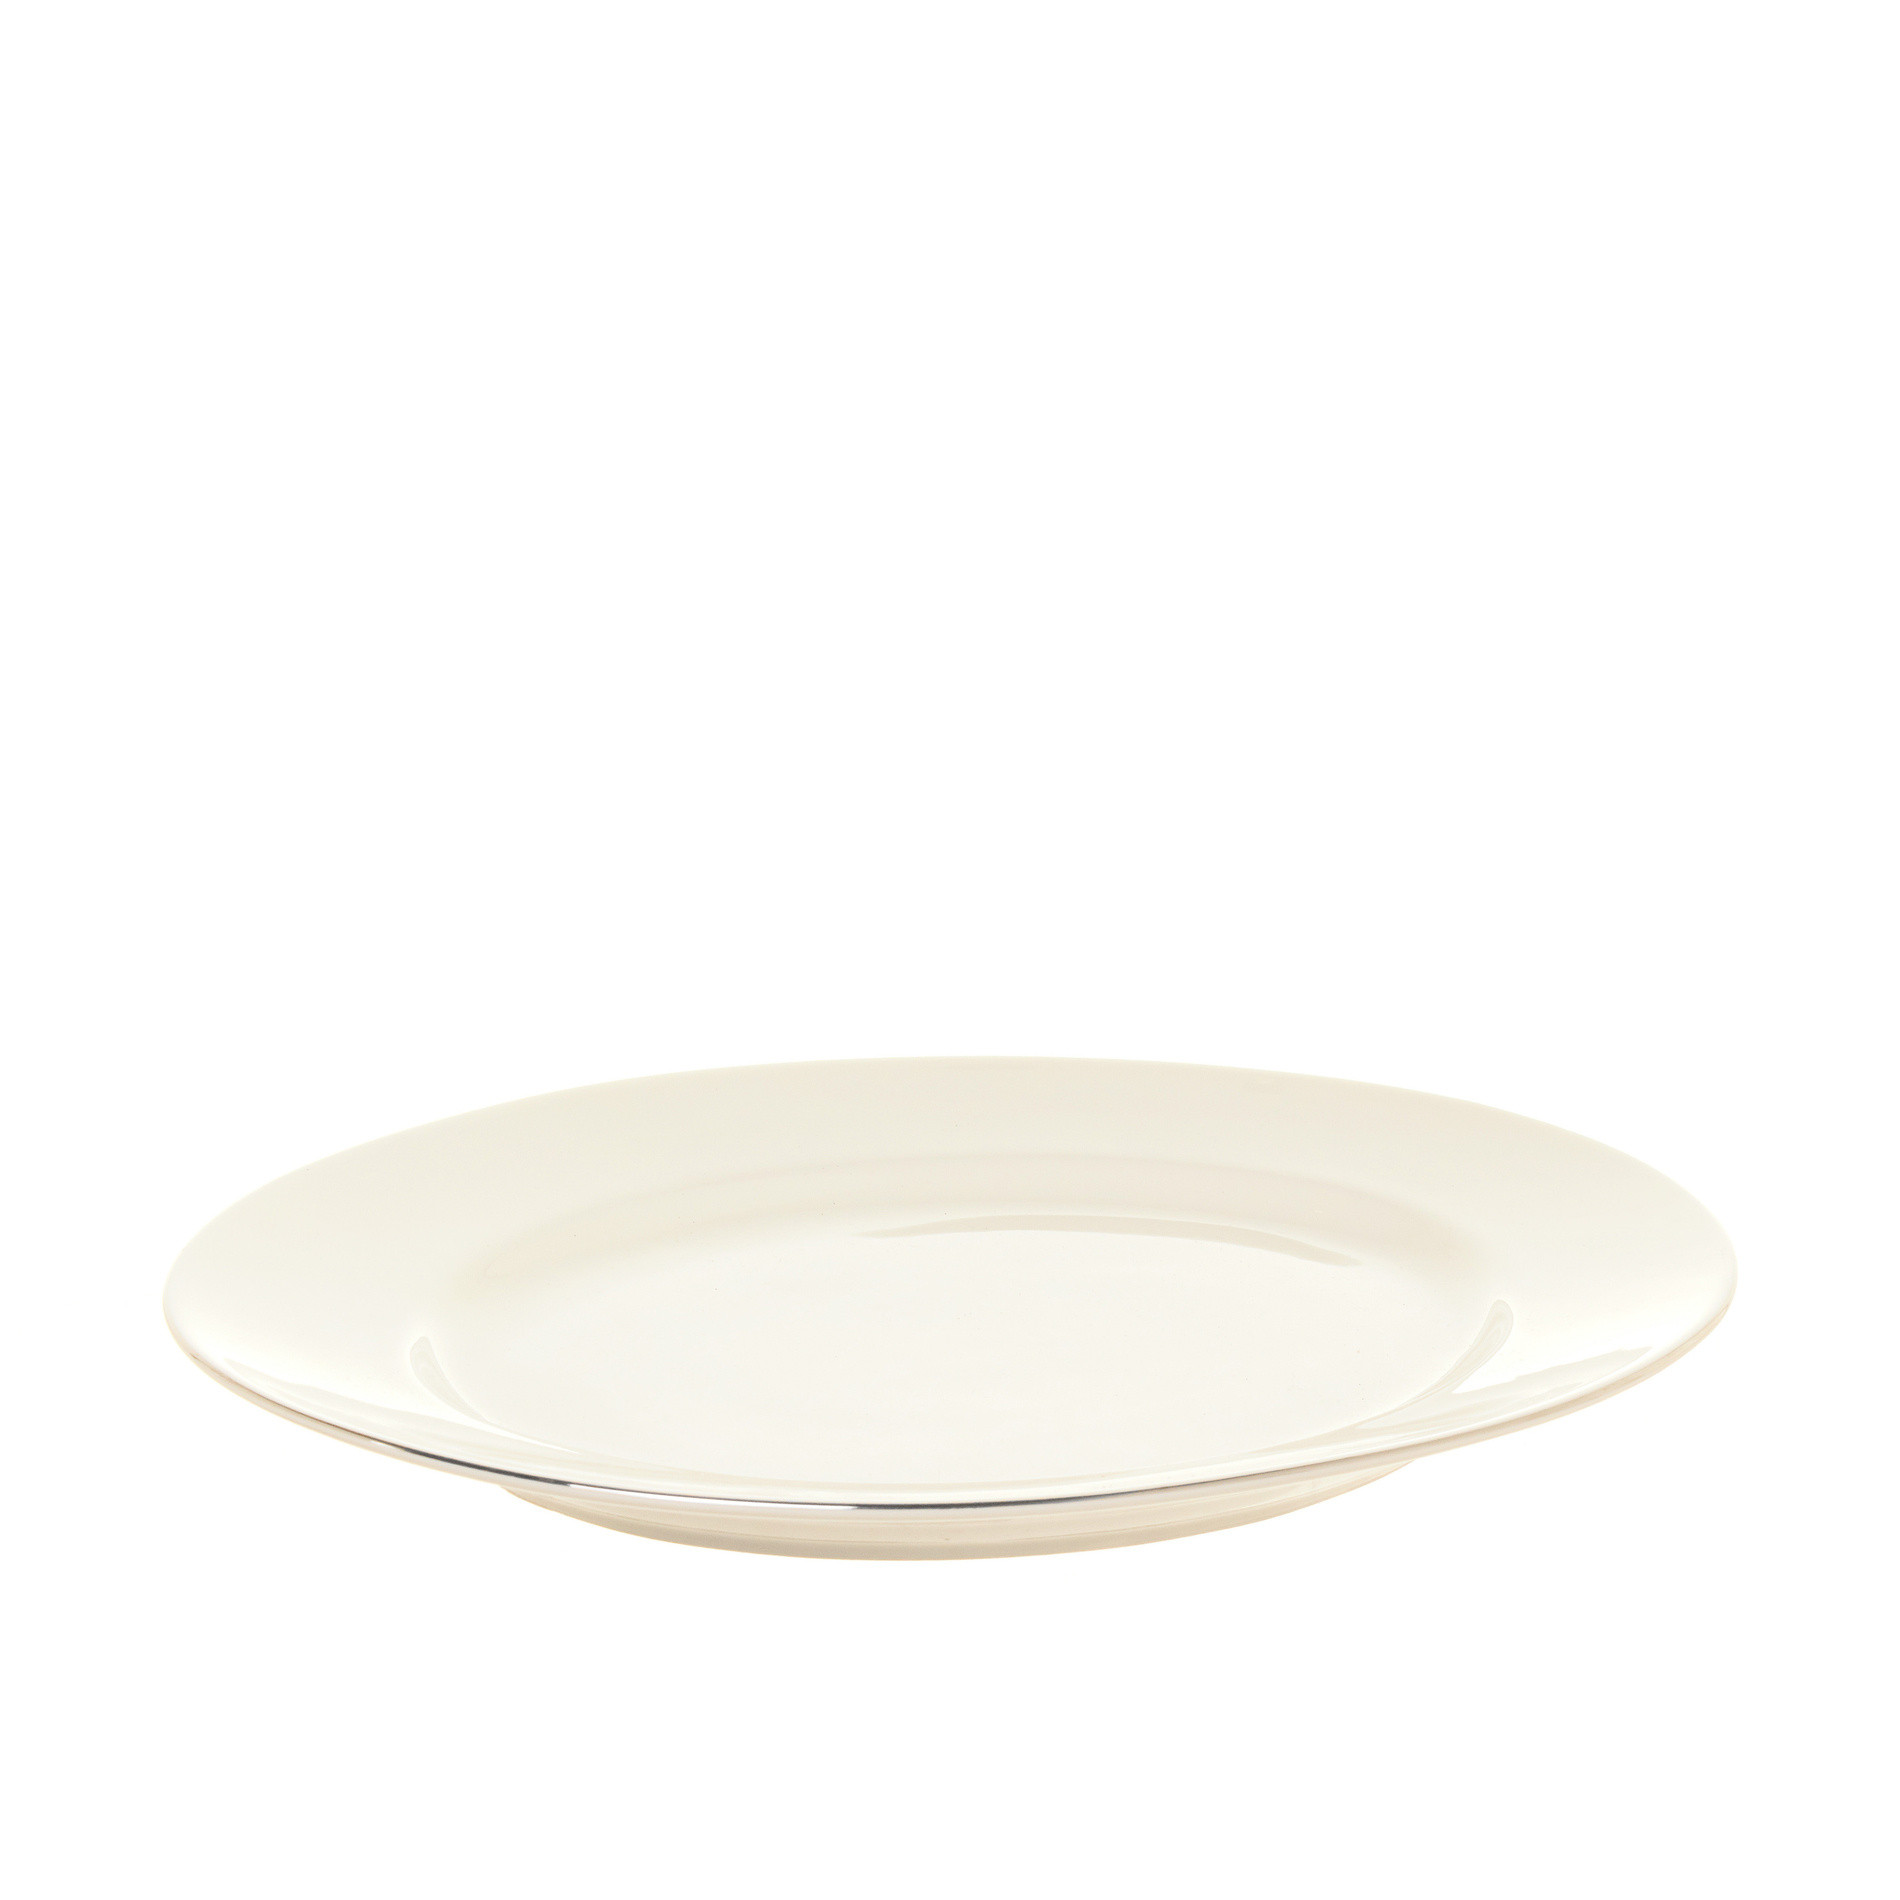 Romanew bone china oval tray, White, large image number 0